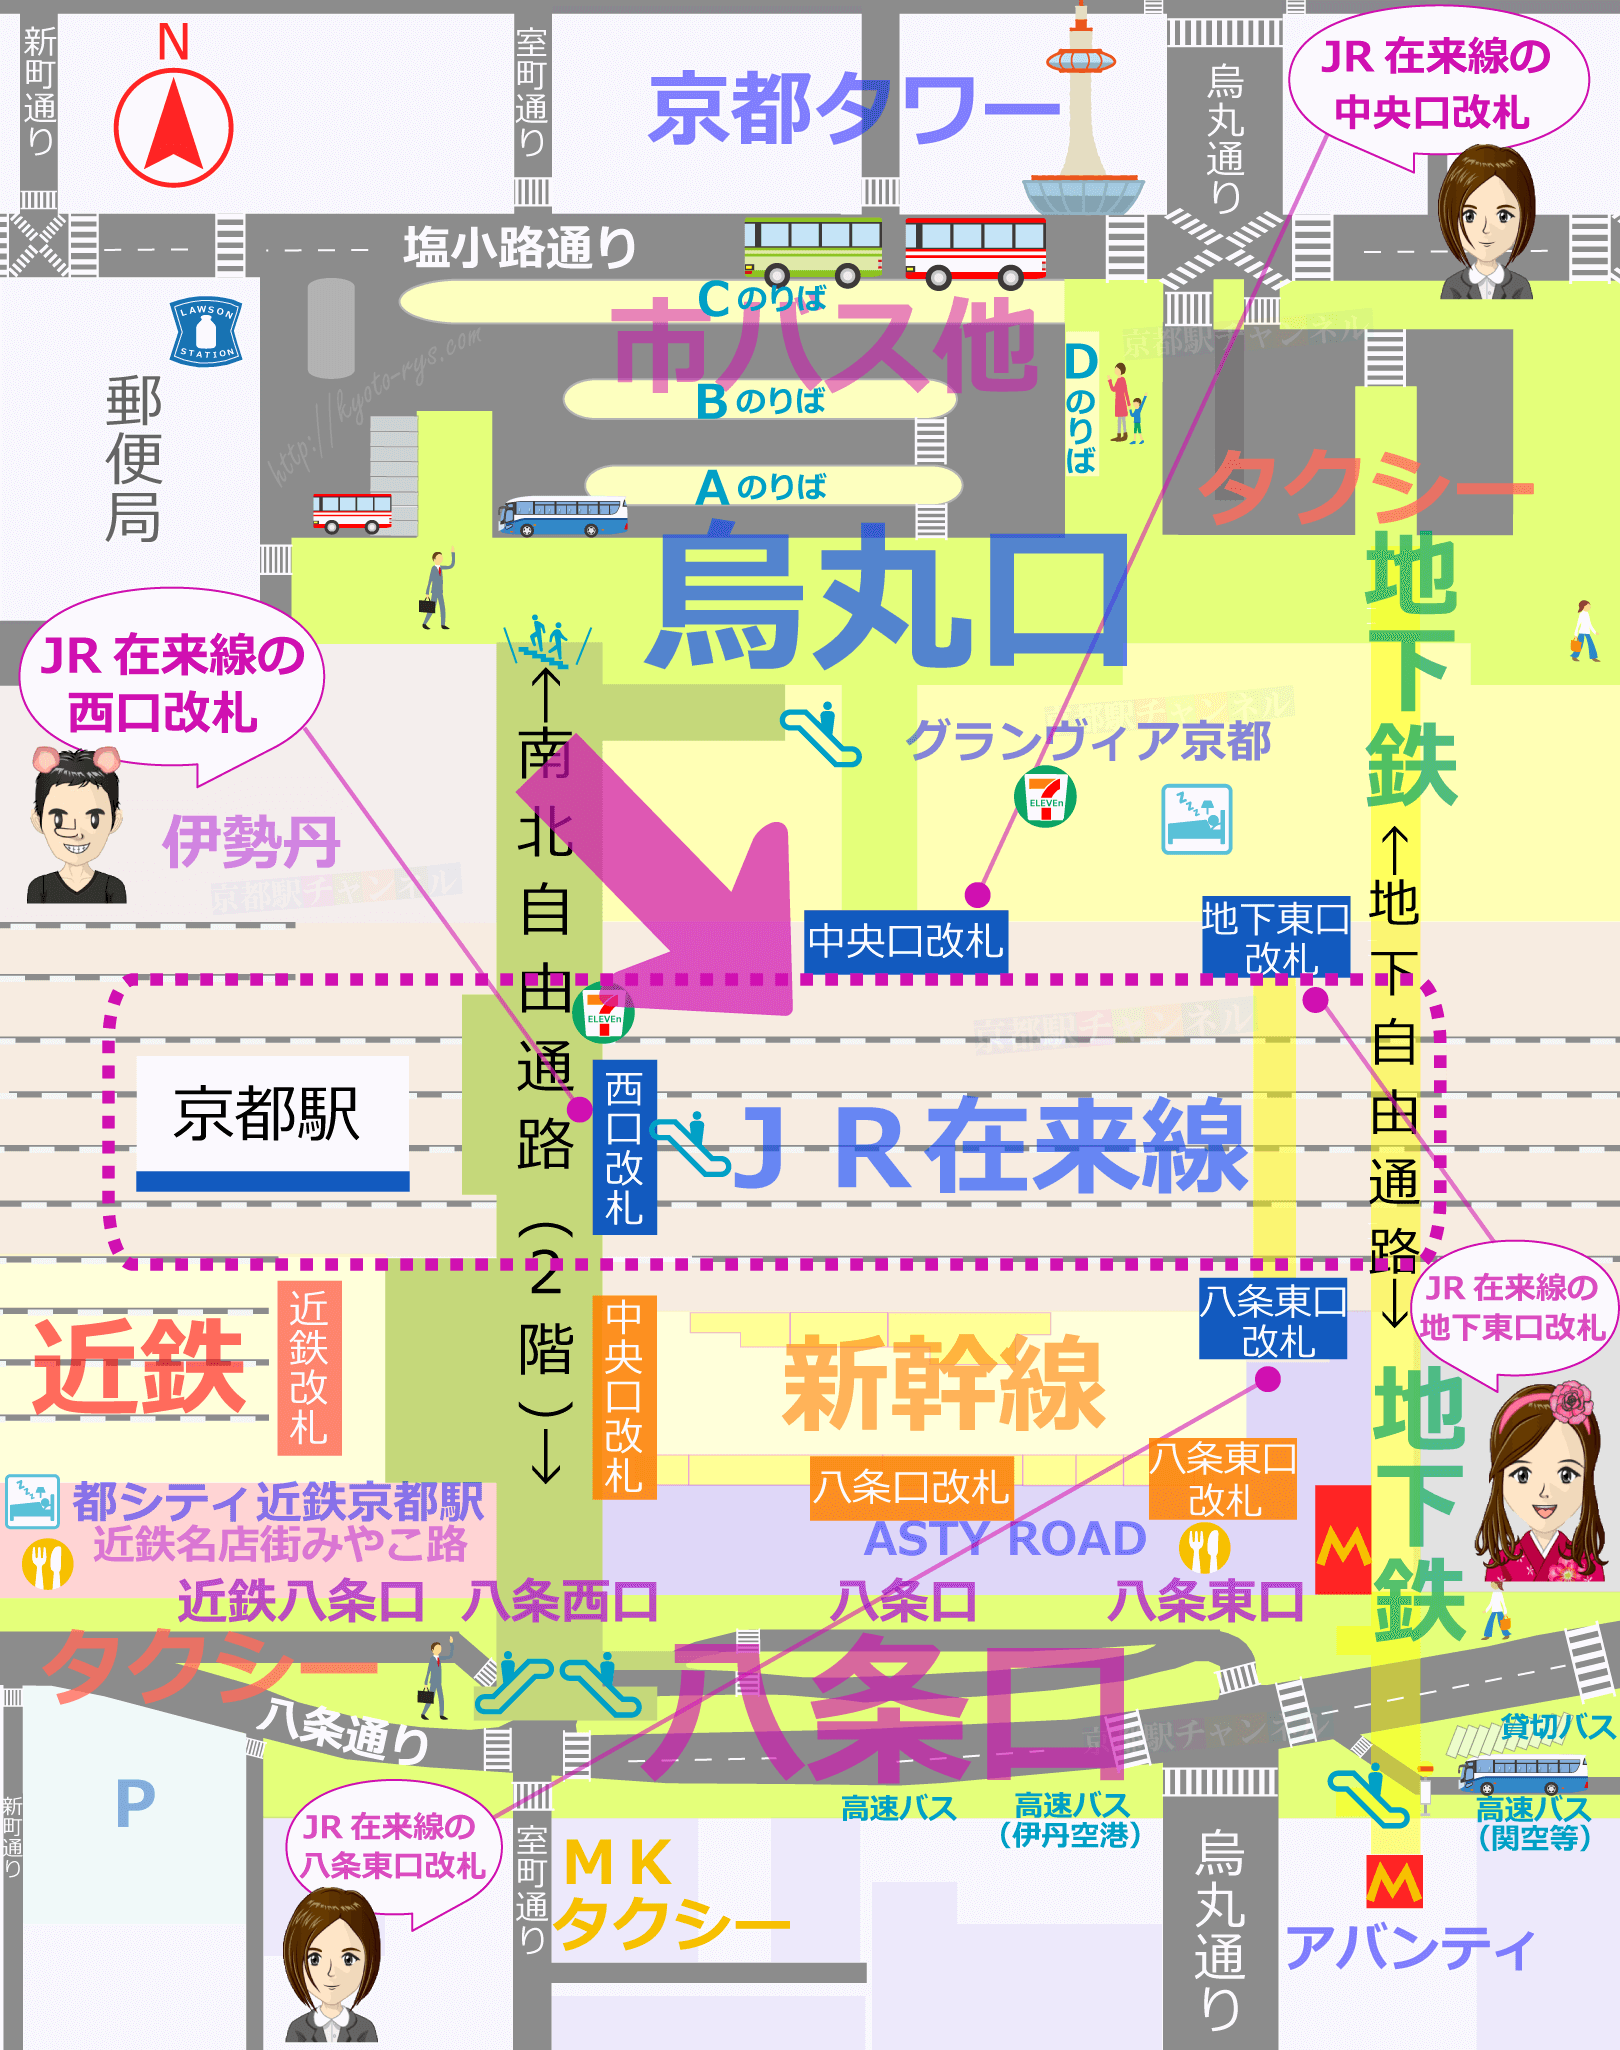 JR京都駅の簡易マップ